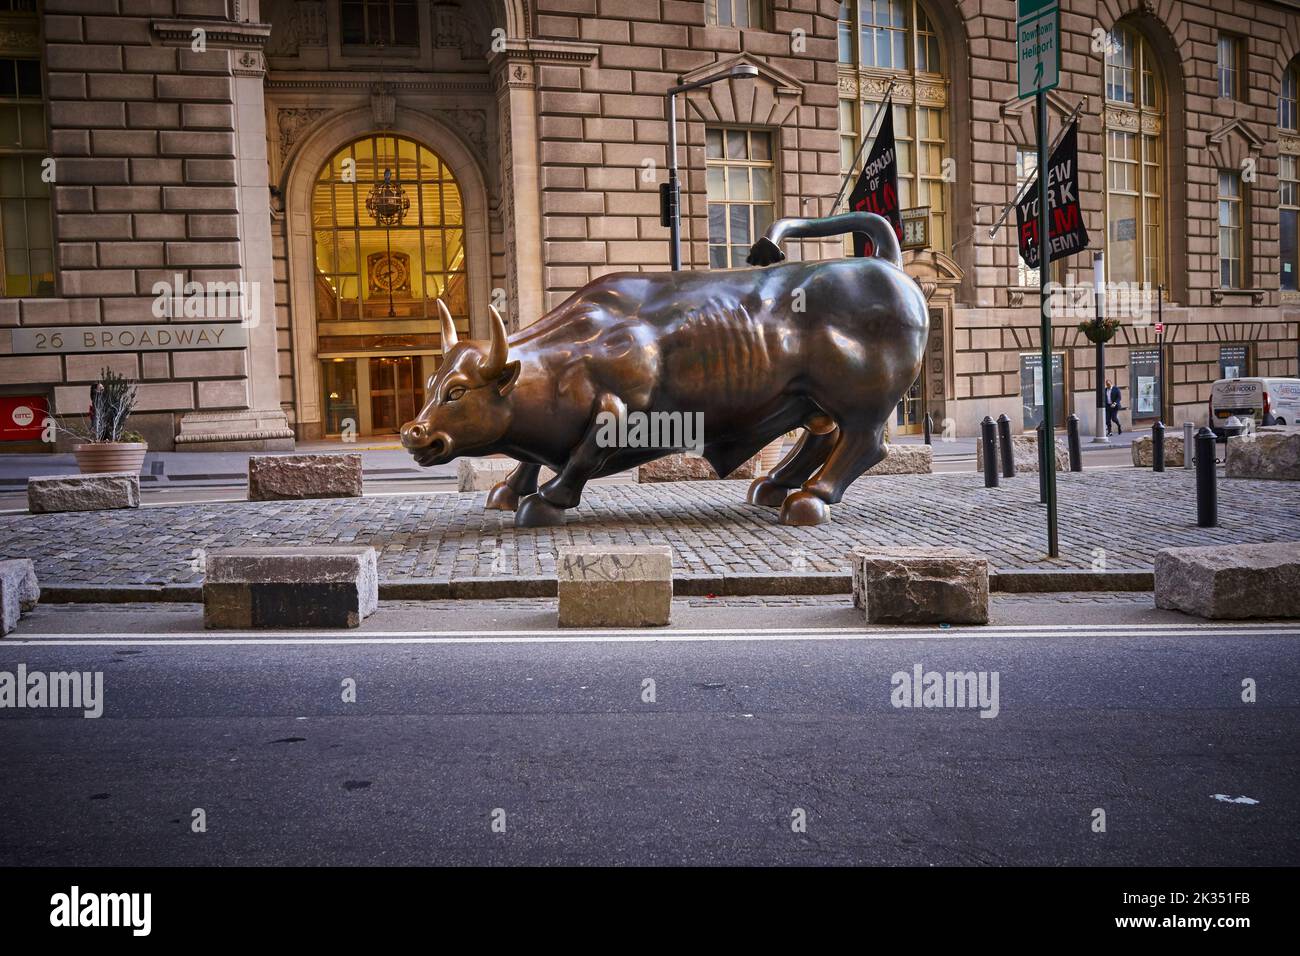 Charging Bull es un popular destino turístico que atrae a miles de personas, simbolizando Wall Street y el Distrito Financiero. Foto de stock